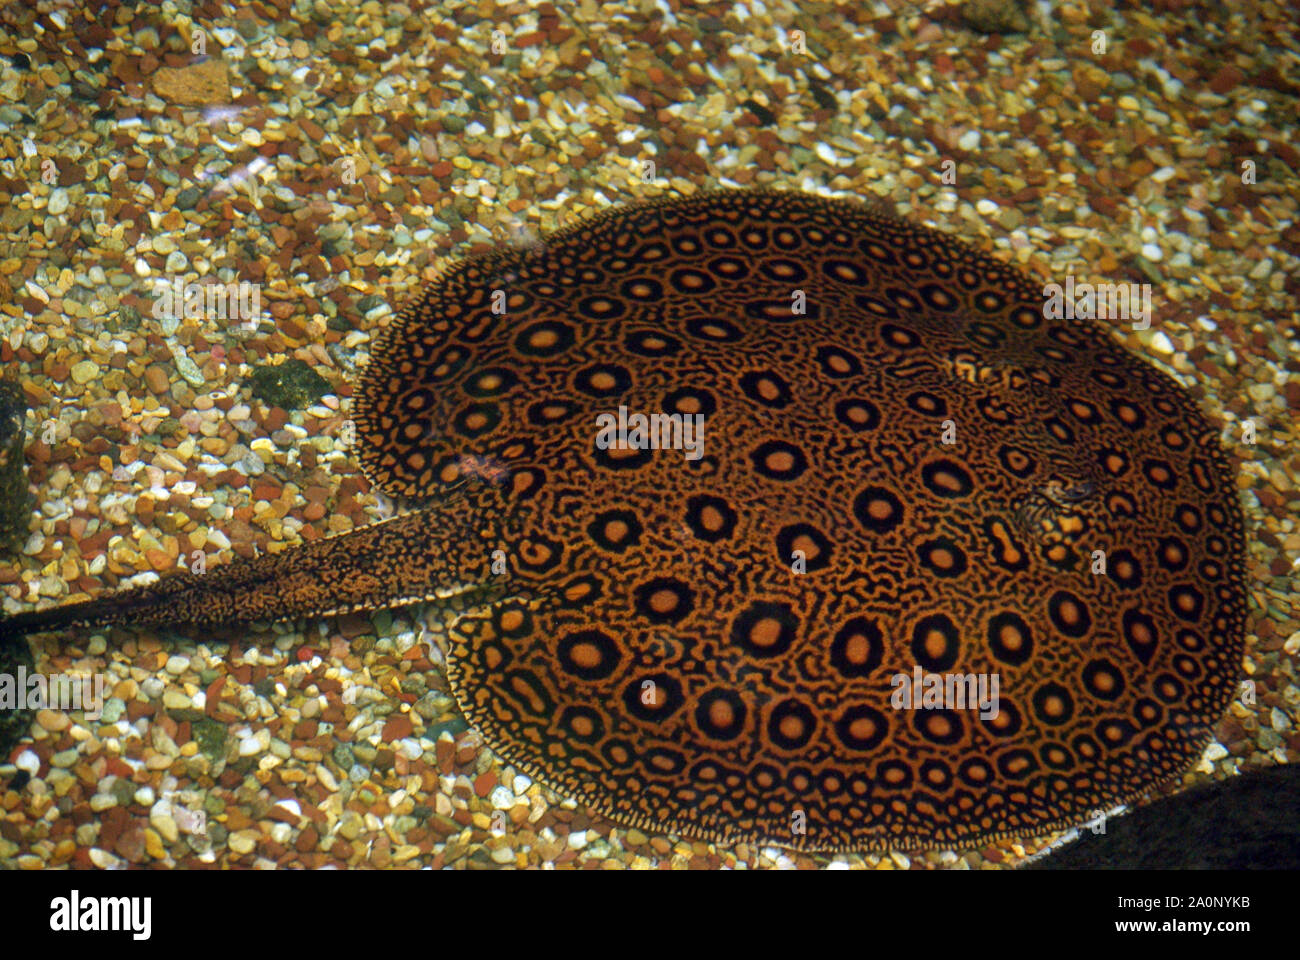 Leopard or Ocellate river stingray, Potamotrygon motoro Stock Photo